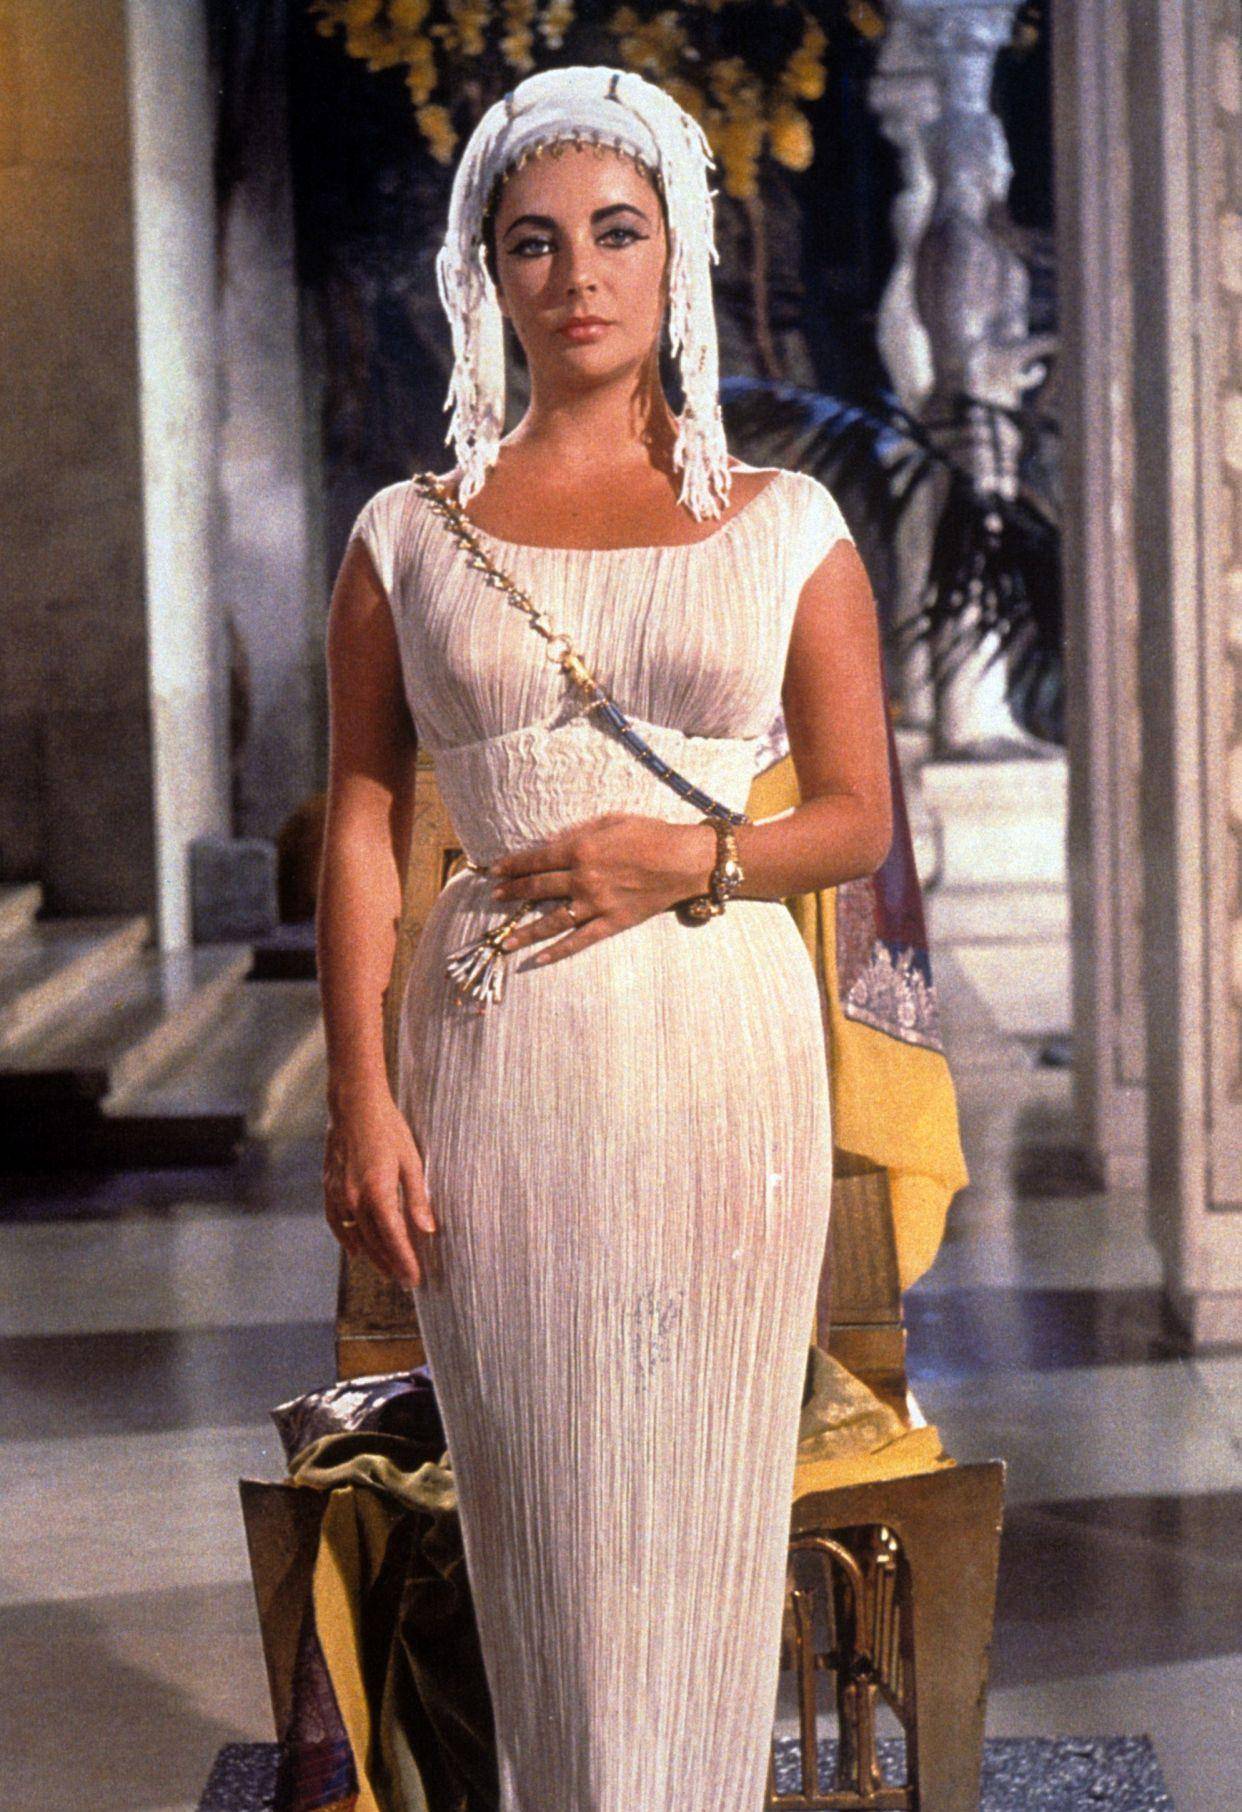 《埃及艳后》服装:不符合历史,但强调了伊丽莎白·泰勒的美丽